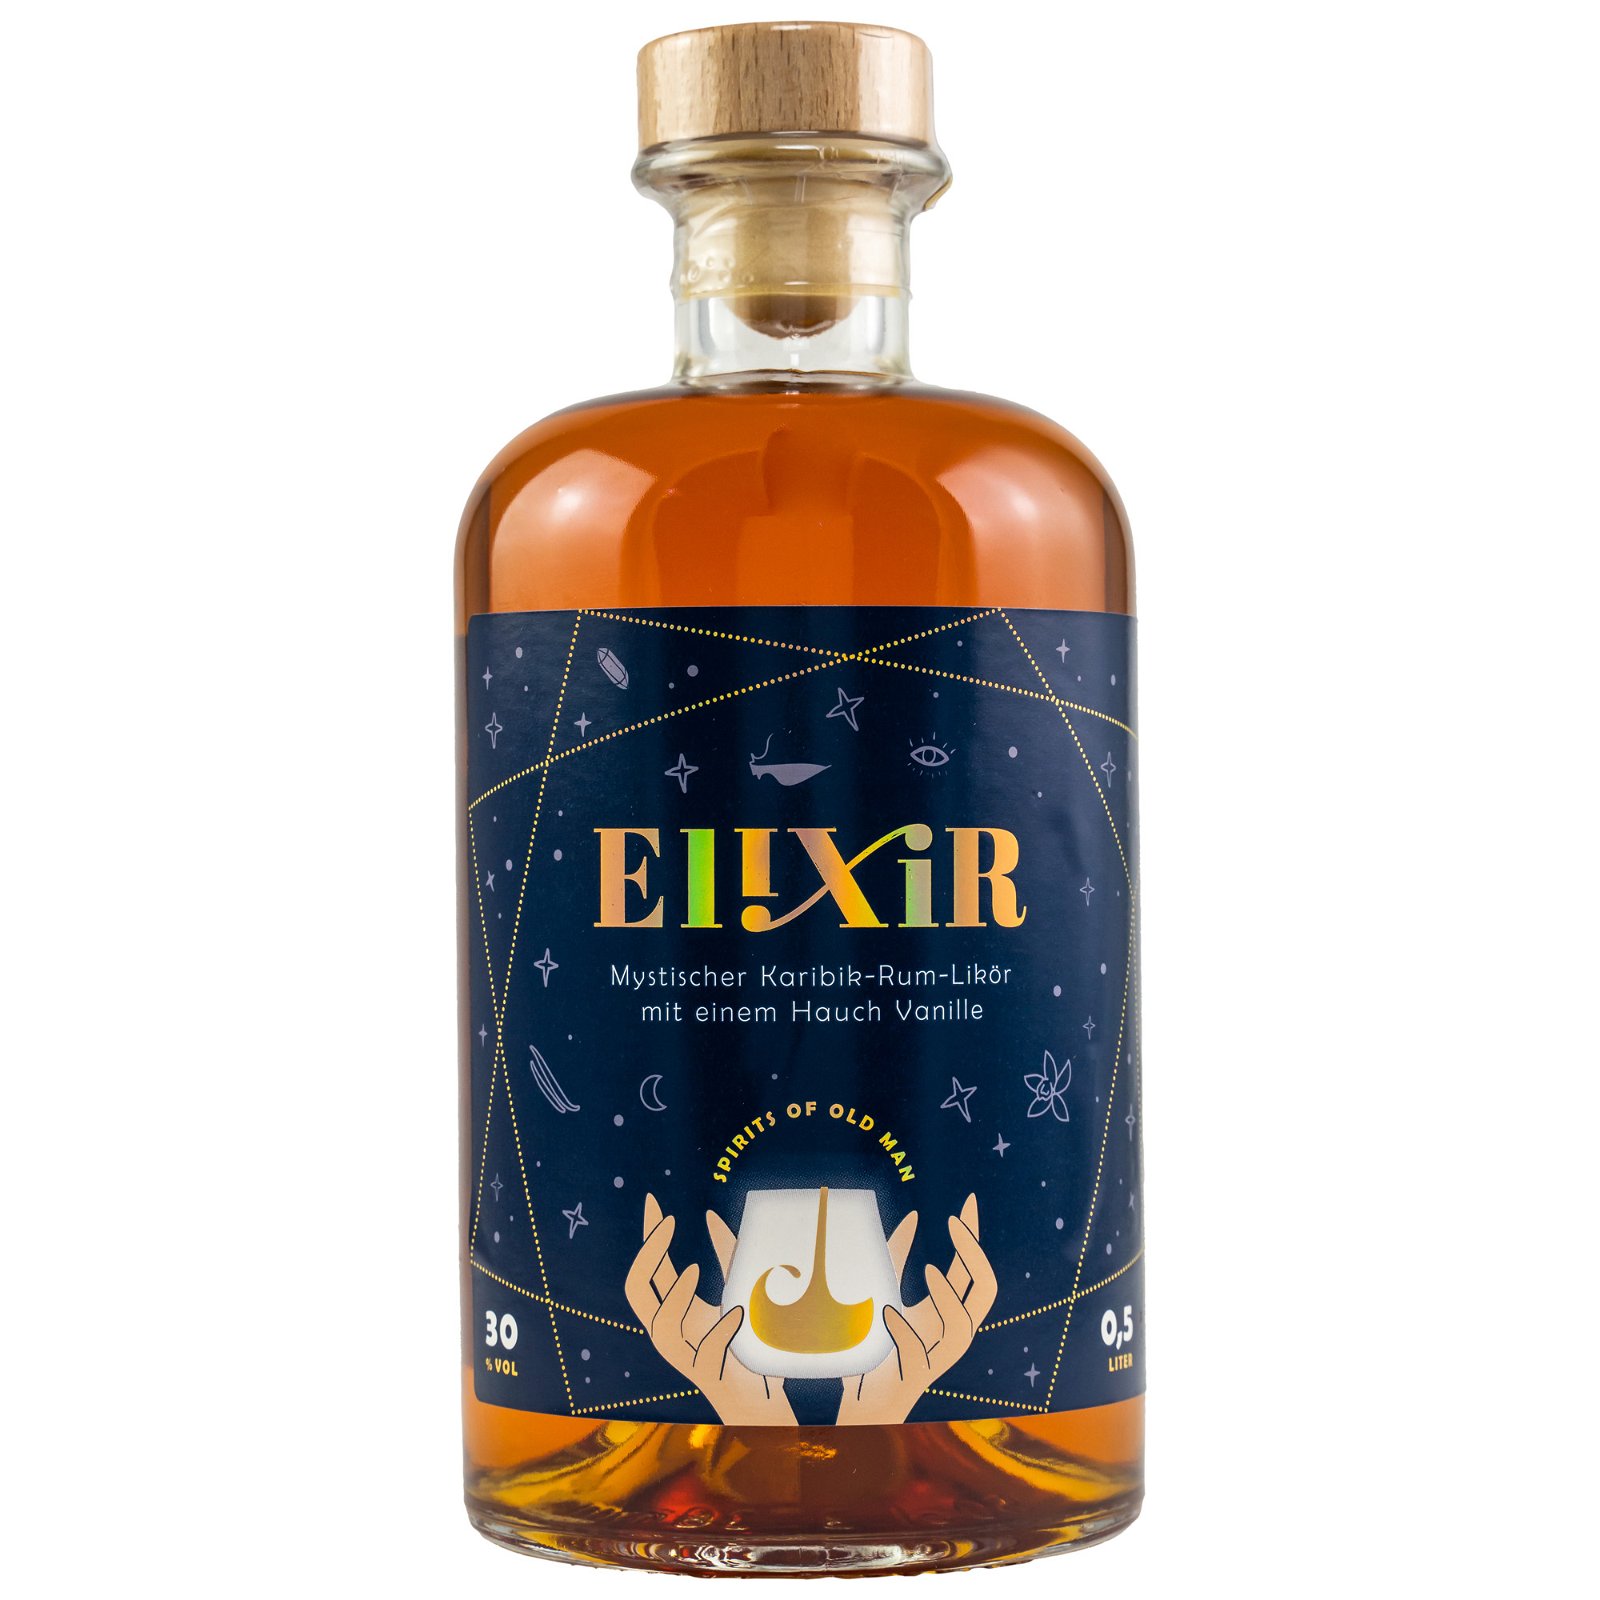 ELIXIR Rum-Likör (Spirits of Old Man)